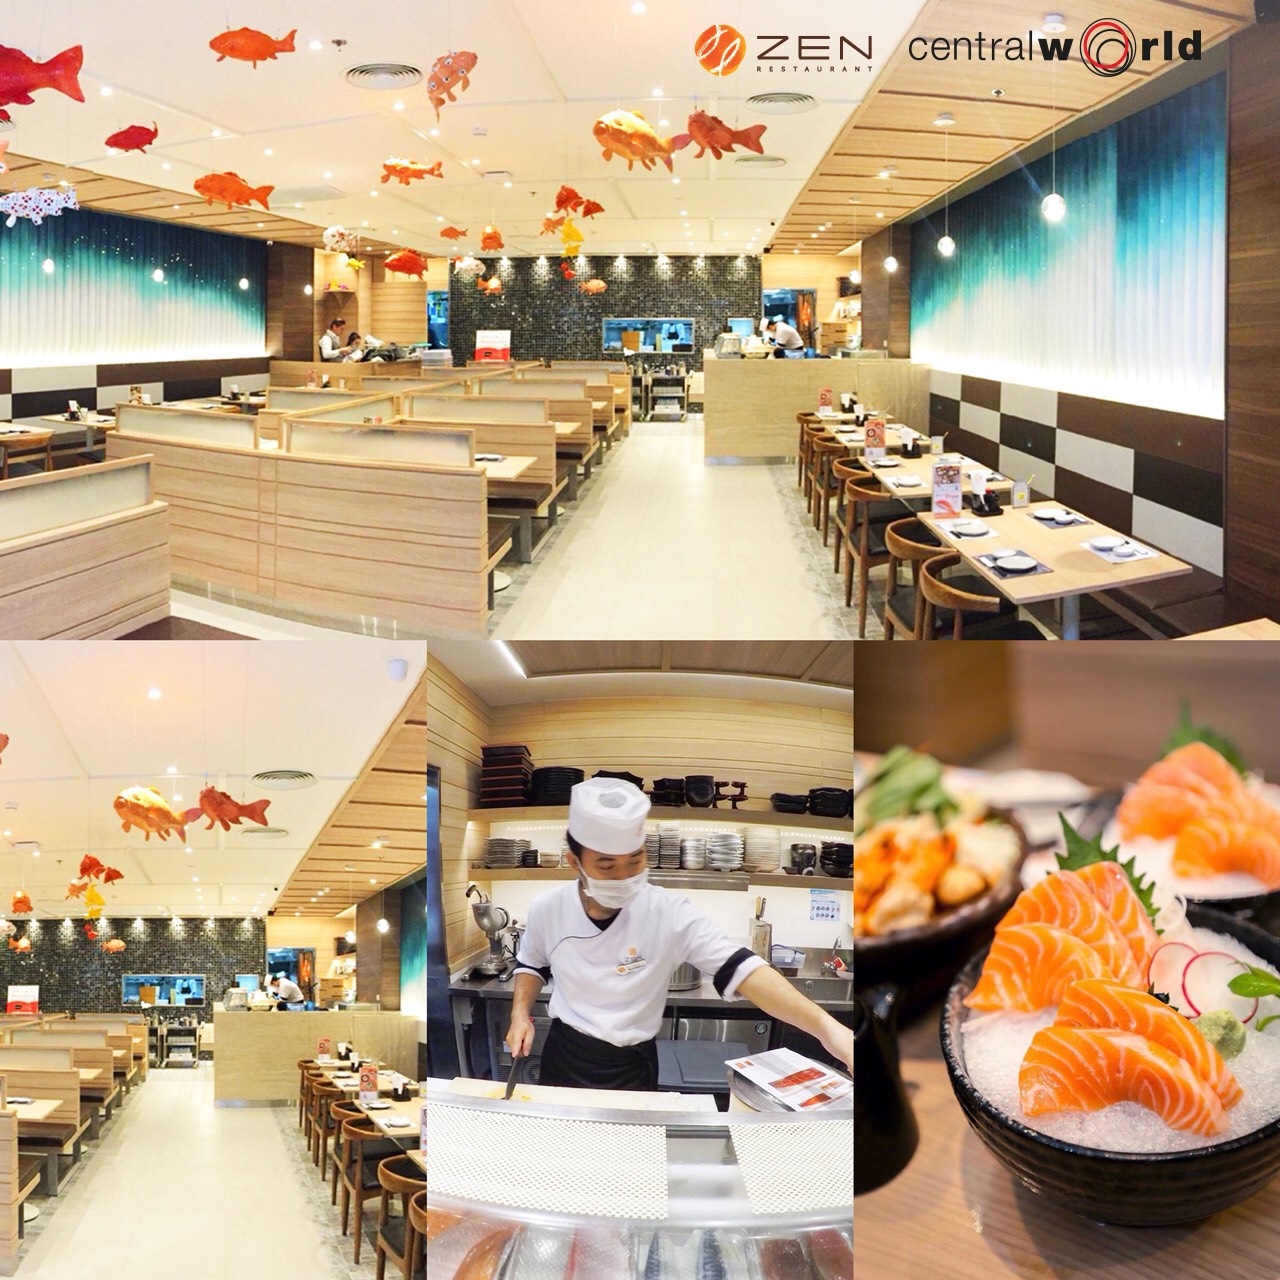 โฉมใหม่ ร้านอาหารญี่ปุ่น ZEN สาขาเซ็นทรัลเวิลด์ ชั้น 6